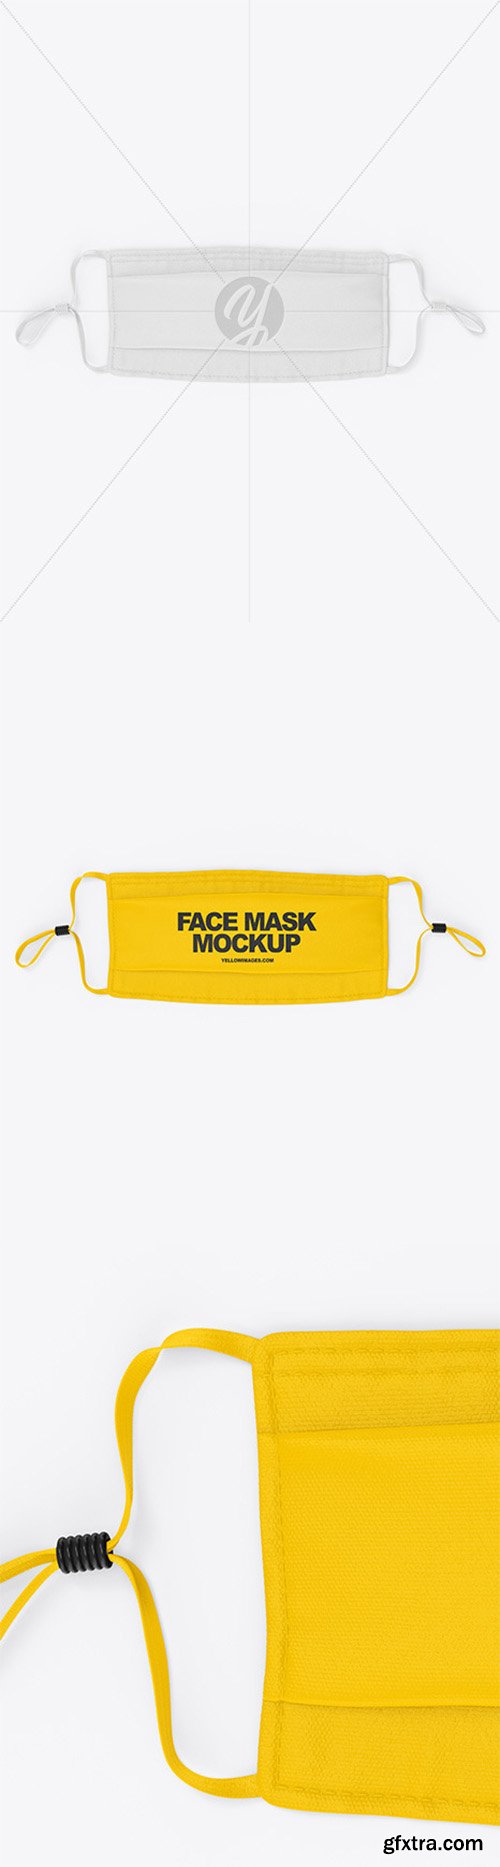 Face Mask Mockup 66429